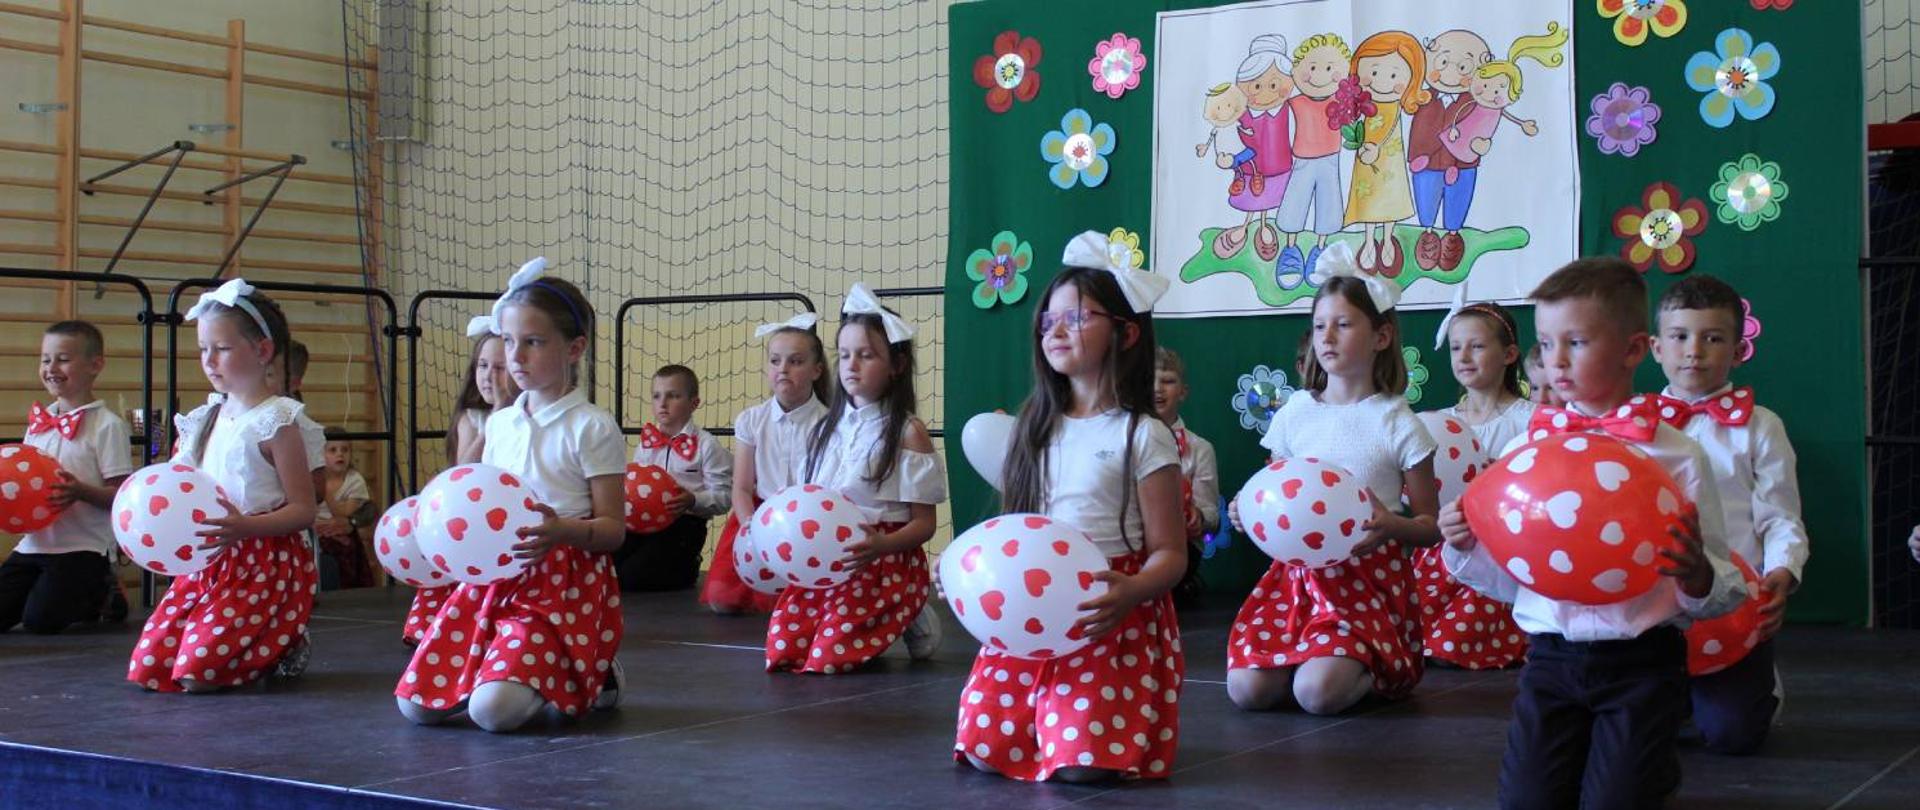 Na scenie dzieci trzymające balony uczestniczą w przedstawieniu